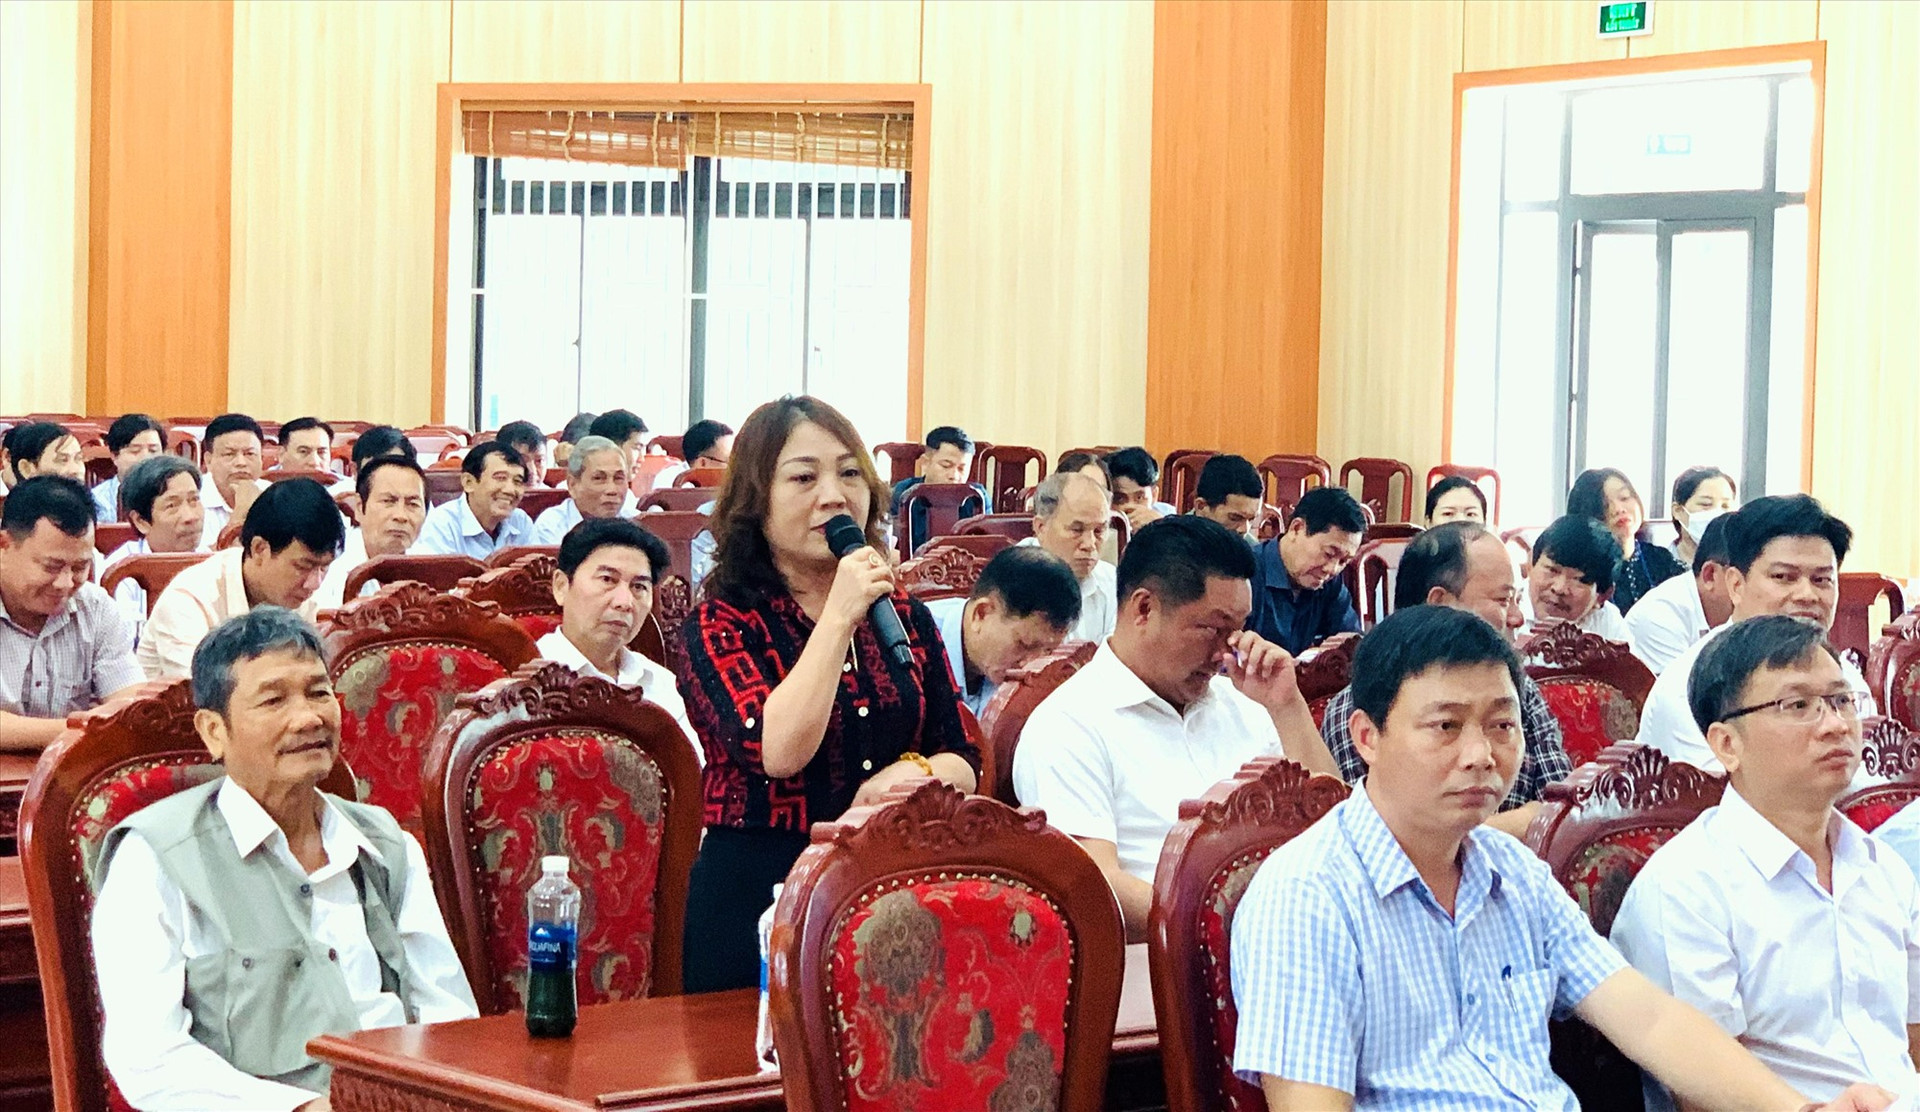 Bà Trần Thị Hiển - Giám đốc Công ty TNHH SX-TM-DV Đại Dương Kính mong muốn tiếp tục đầu tư hạ tầng giao thông. Ảnh: T.N